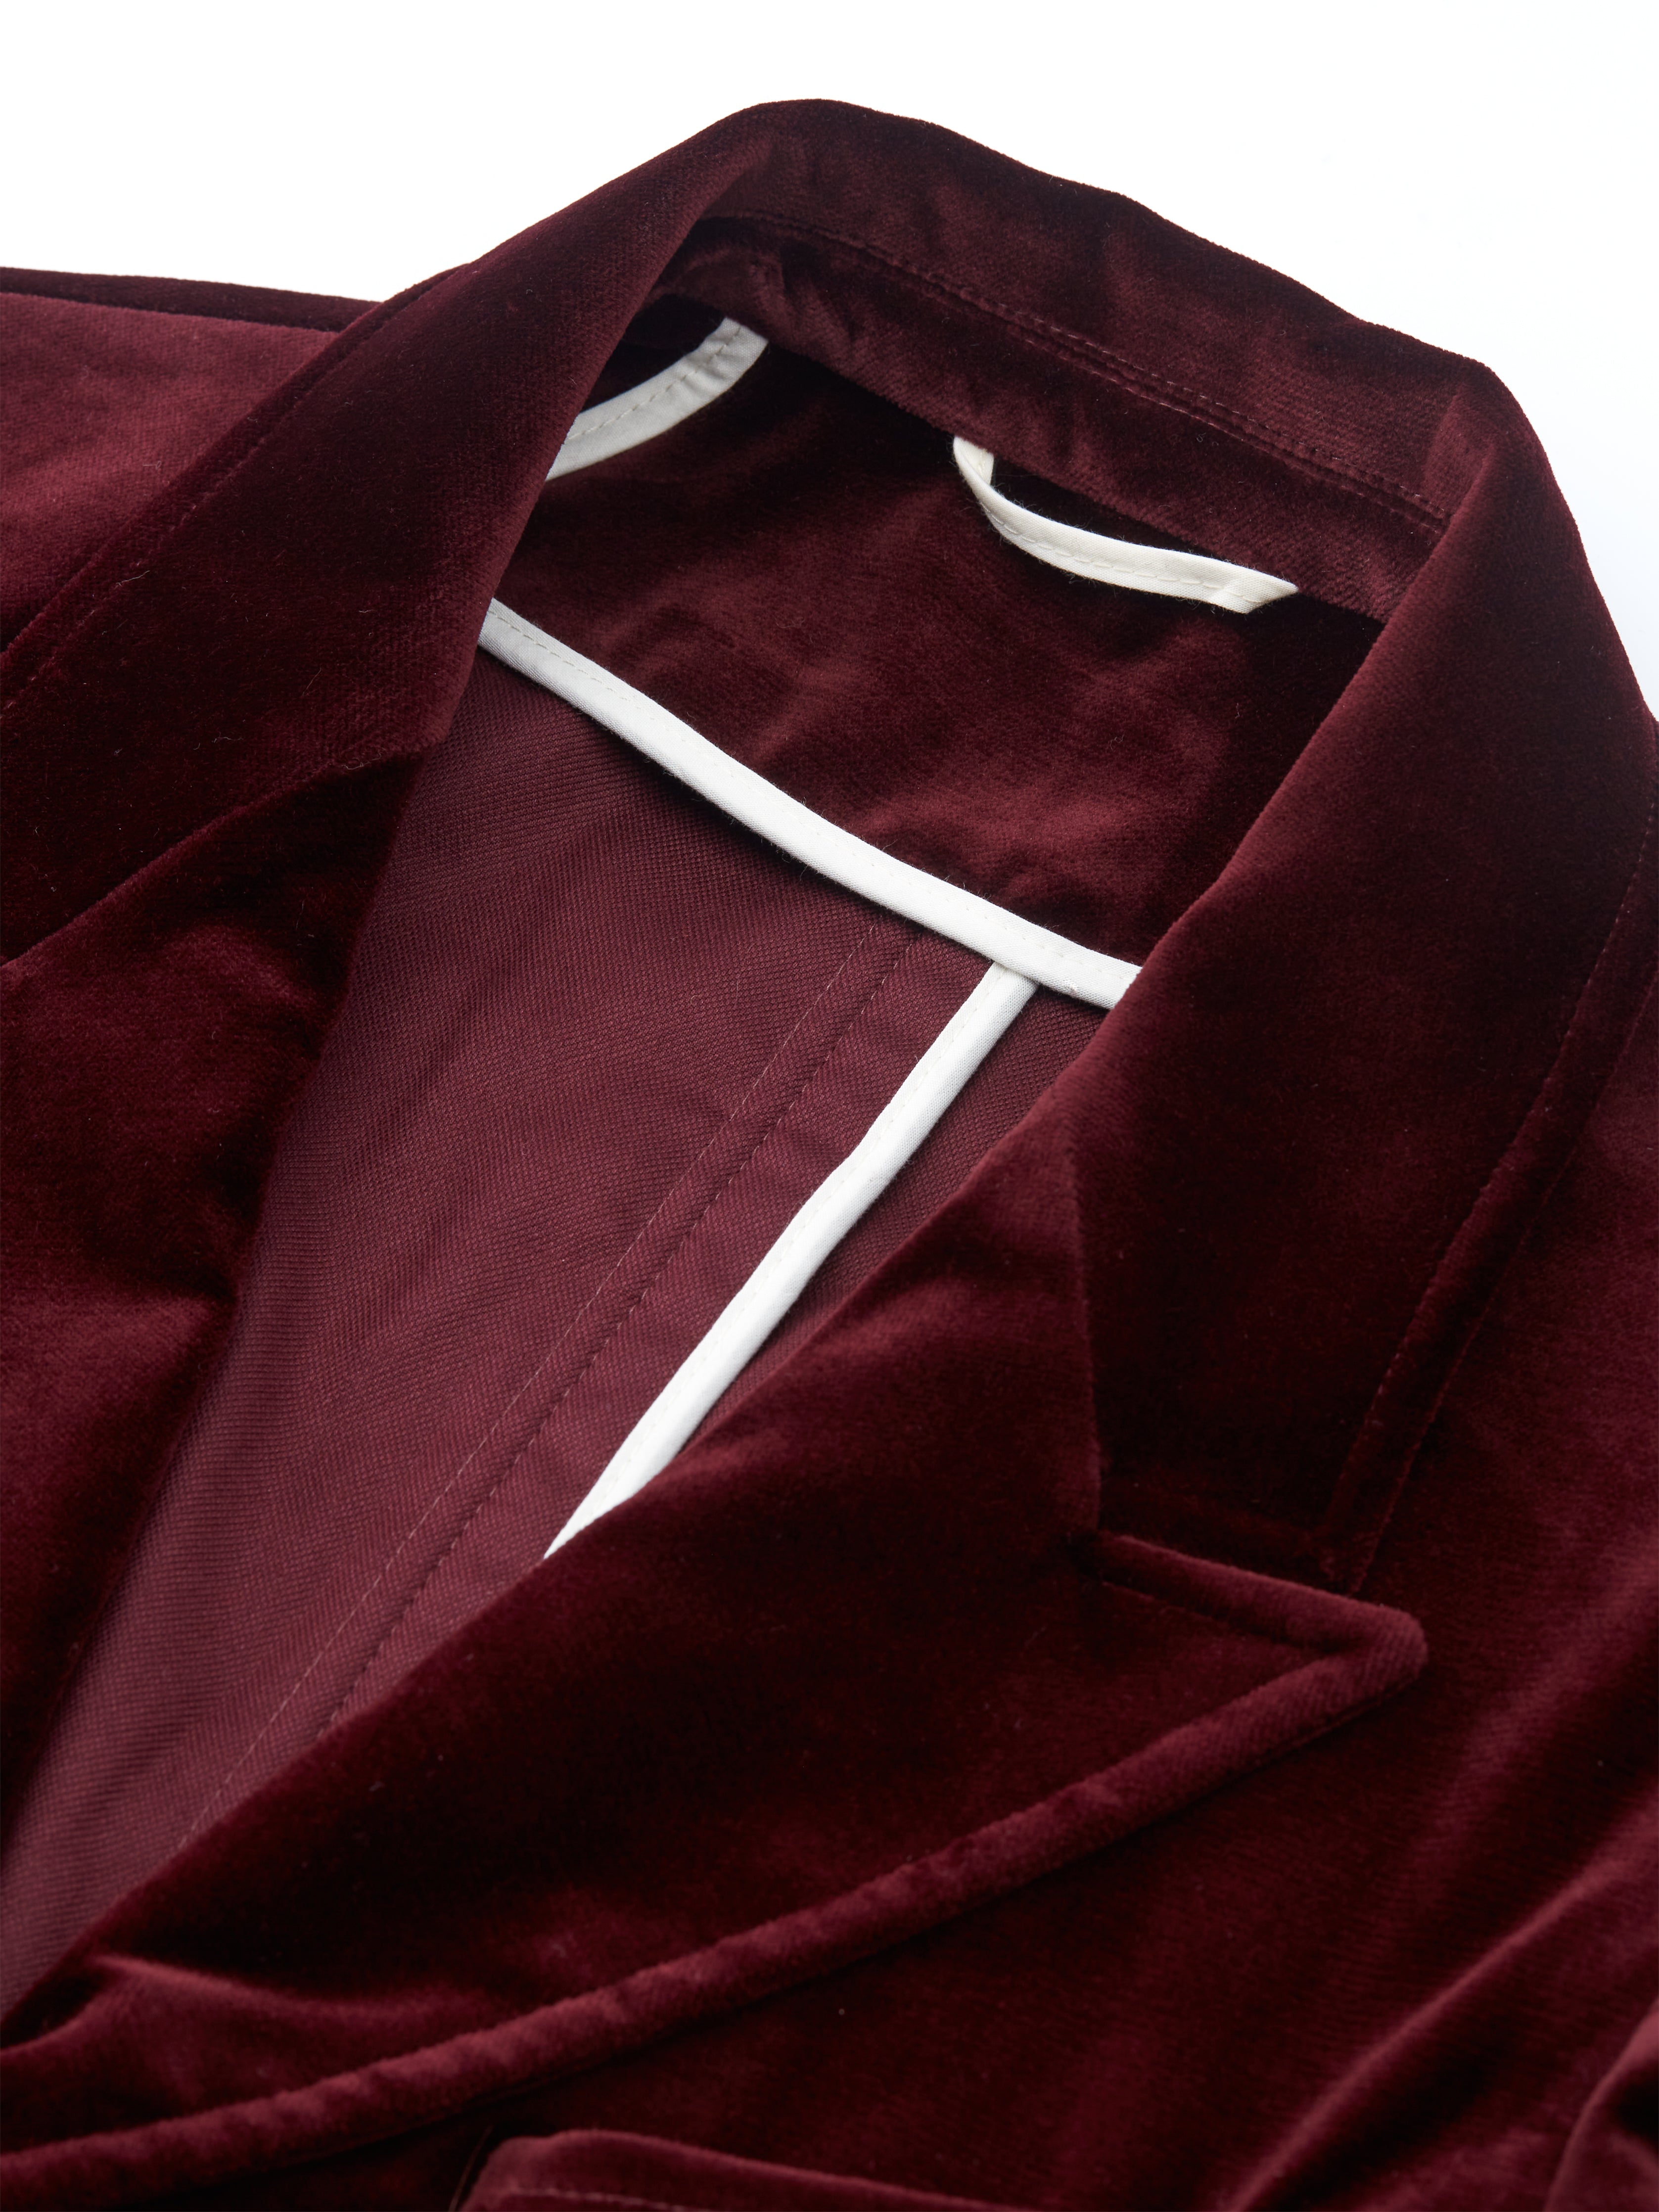 Burgundy Velvet Mansfield Suit